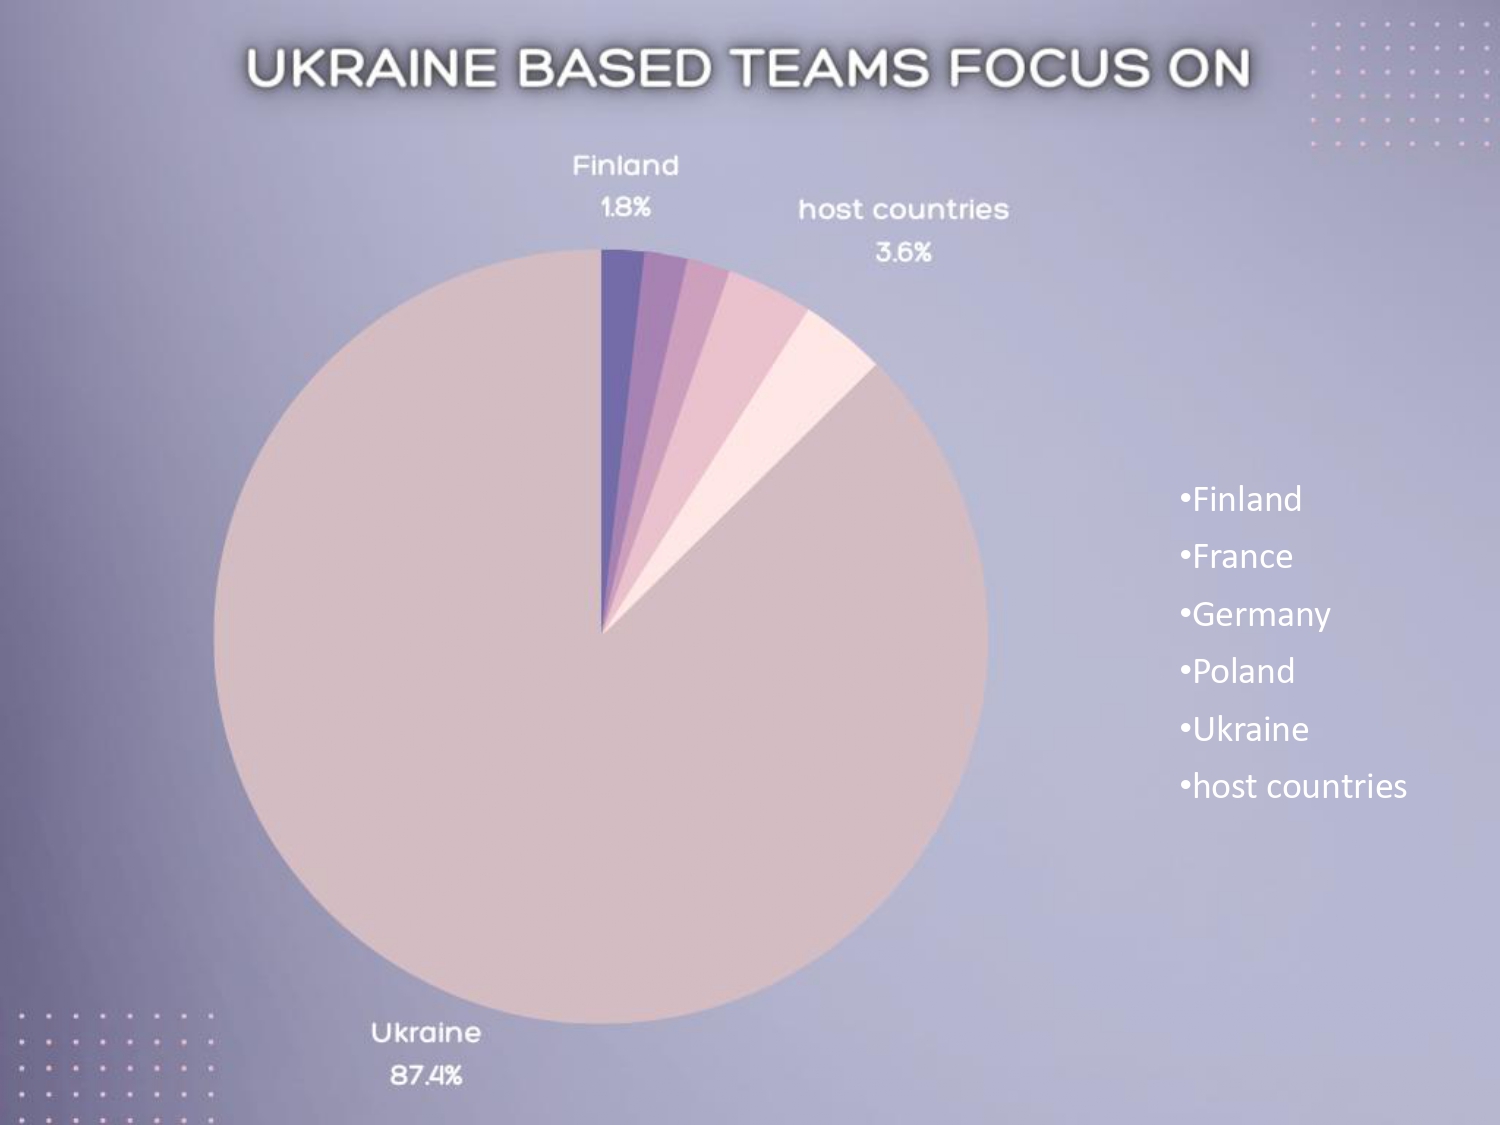 Ukraine based teams focus on